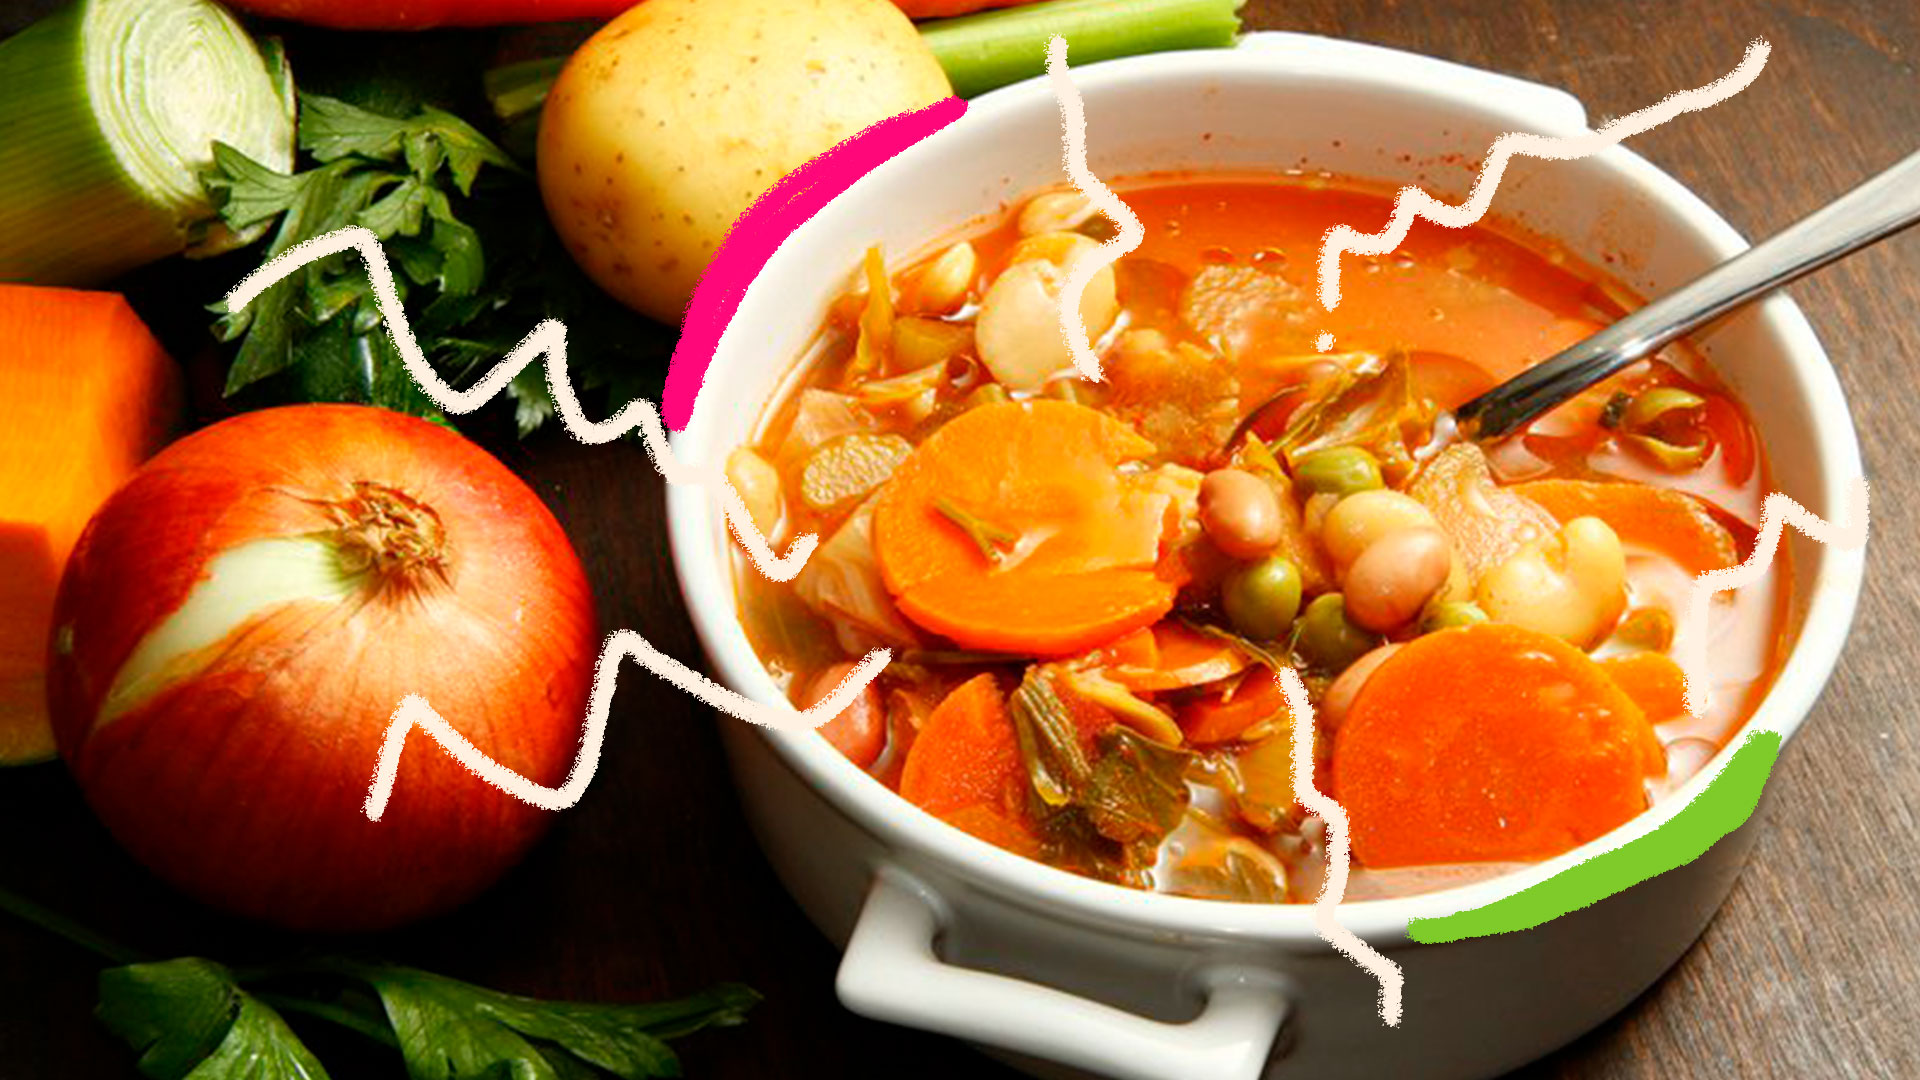 Uma cumbuca de sopa com cenouras, batatas, feijão e outros grãos. Ao lado, legumes diversos - cebolas, batatas, cheiro verde e alho poró.